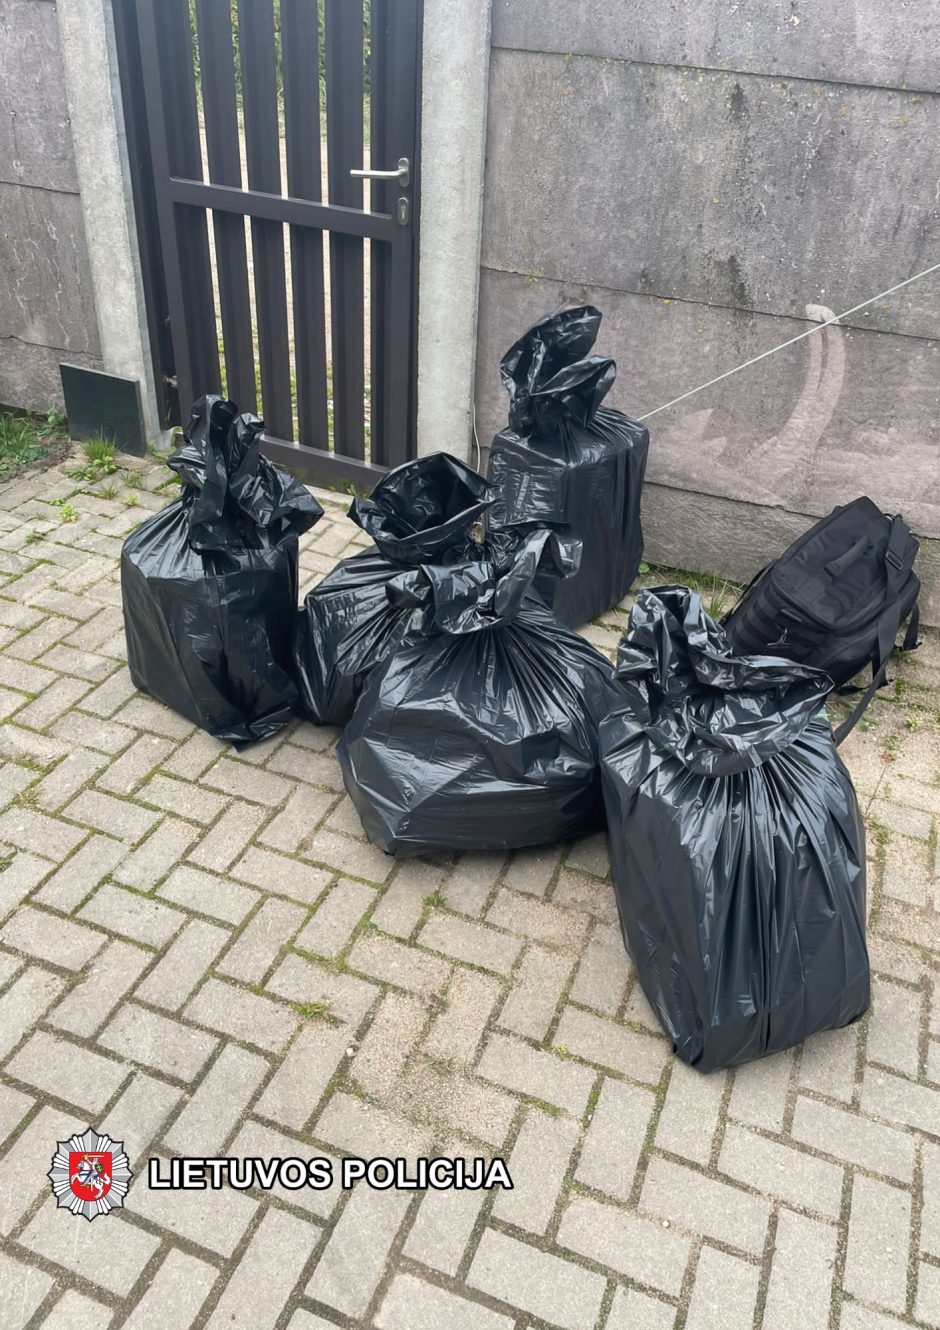 Kauno mieste ir rajone sulaikyta 10 tūkst. kontrabandinių cigarečių pakelių